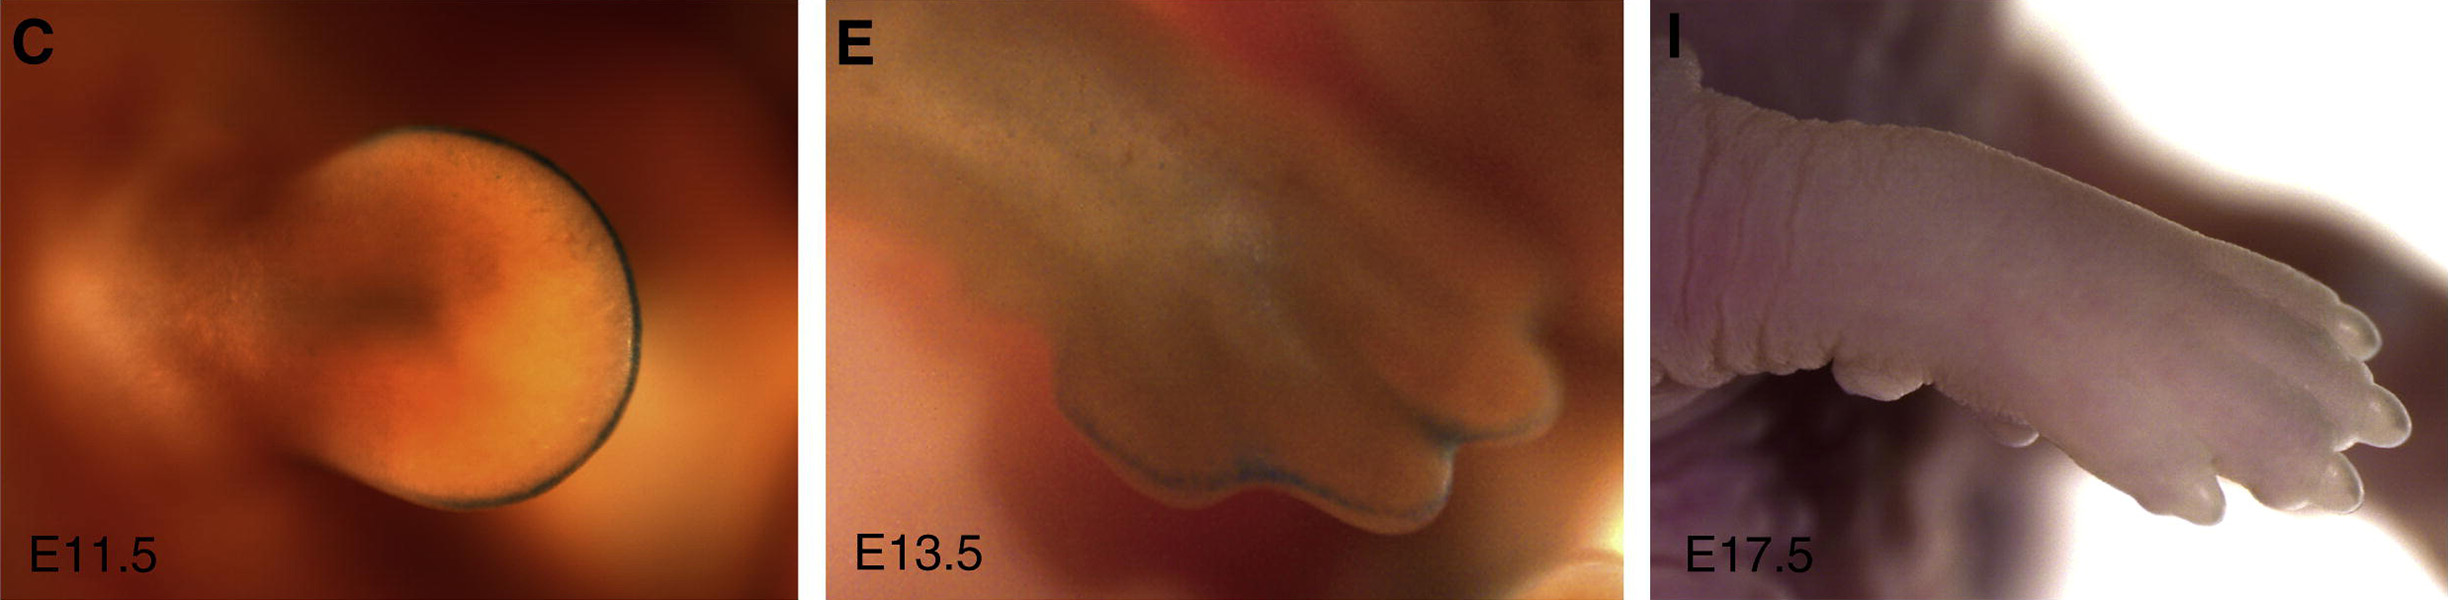 Tres fotos muestran el desarrollo de una pata de ratón desde un brote redondo hasta una extremidad en forma de manopla y un pie completo. Una línea azul bordea la punta de la extremidad en las dos primeras imágenes.